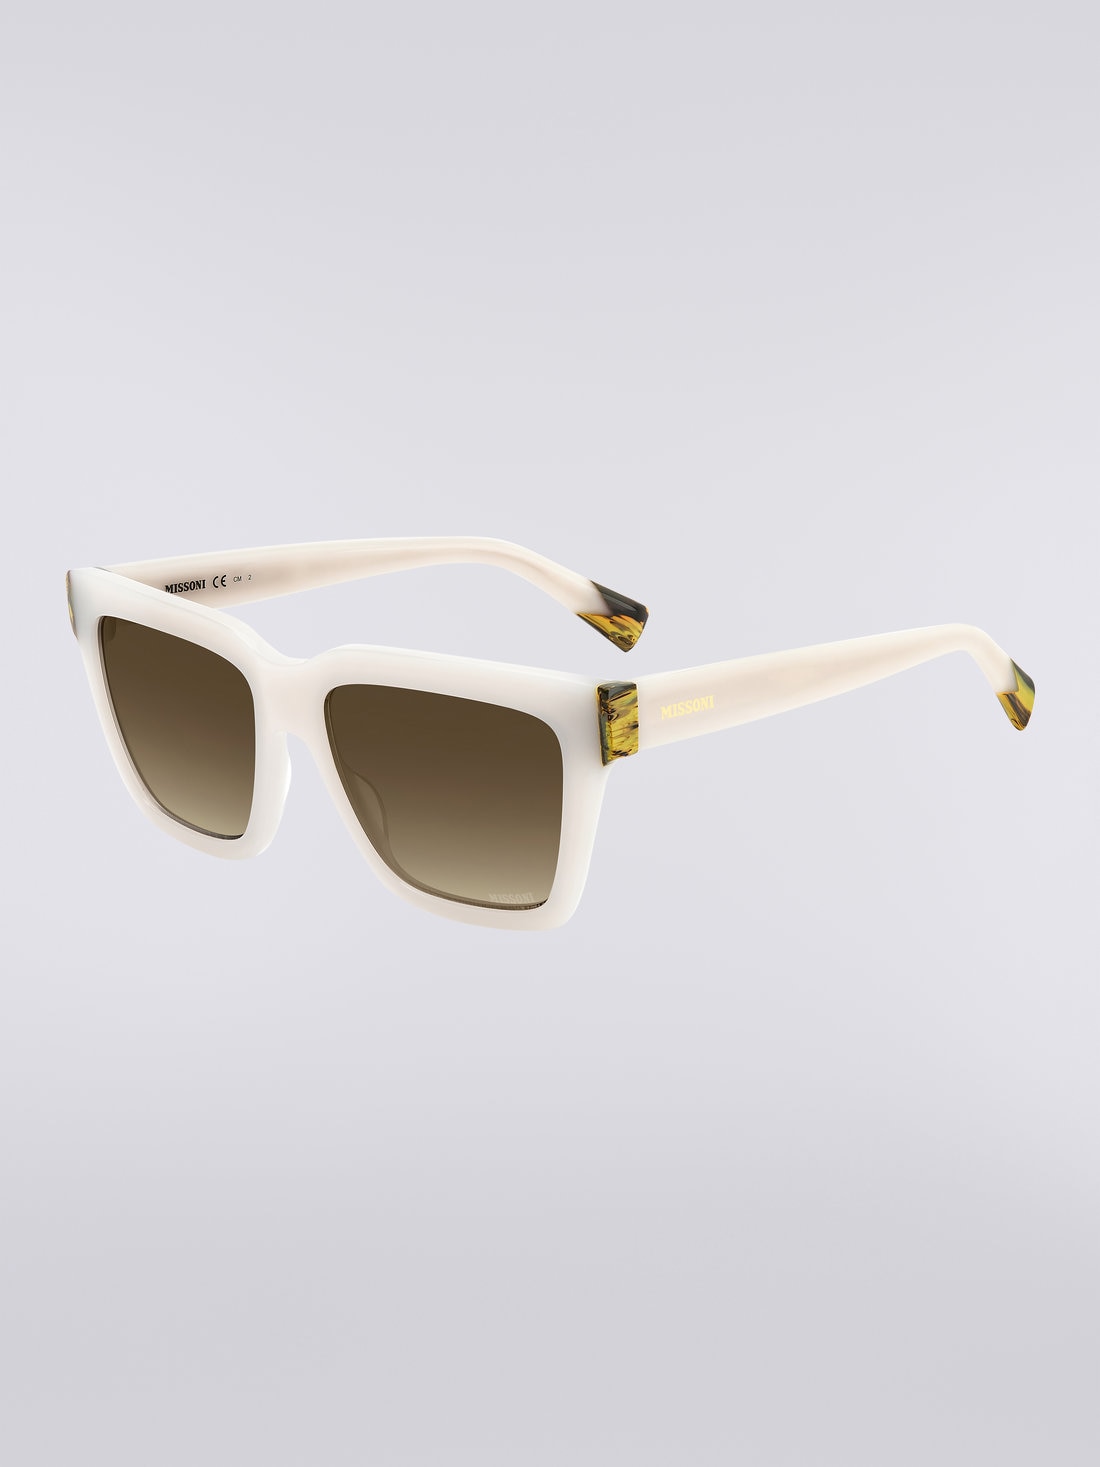 Missoni Seasonal Acetate Sunglasses, Multicoloured  - 8051575840197 - 1